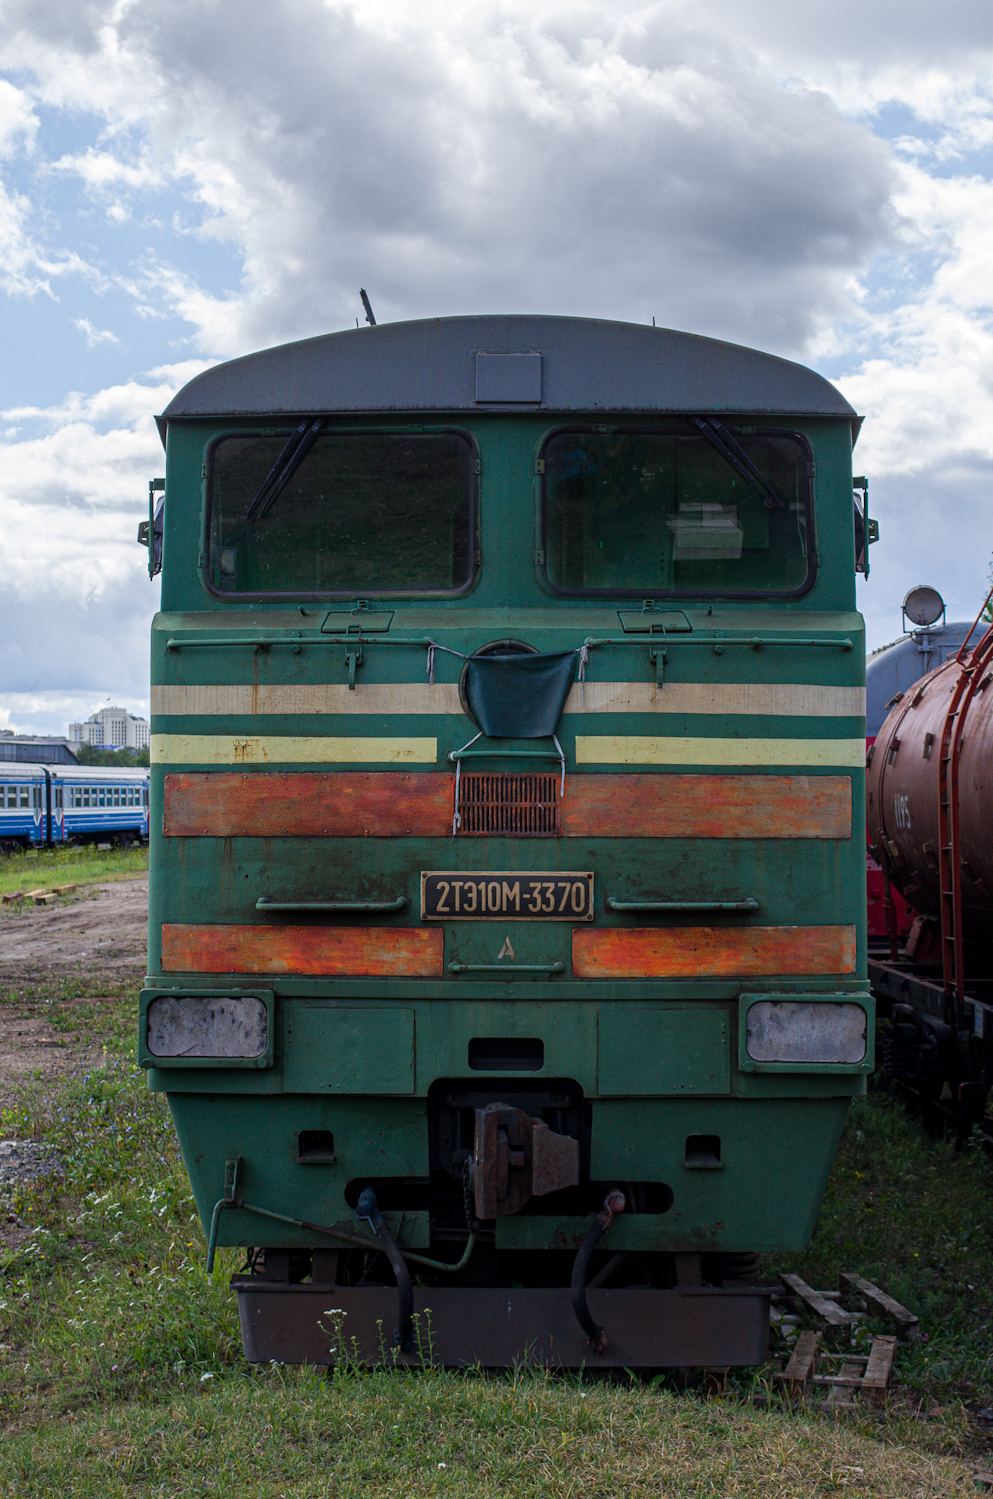 2ТЭ10М-3370; Фотозарисовки (Белорусская железная дорога)